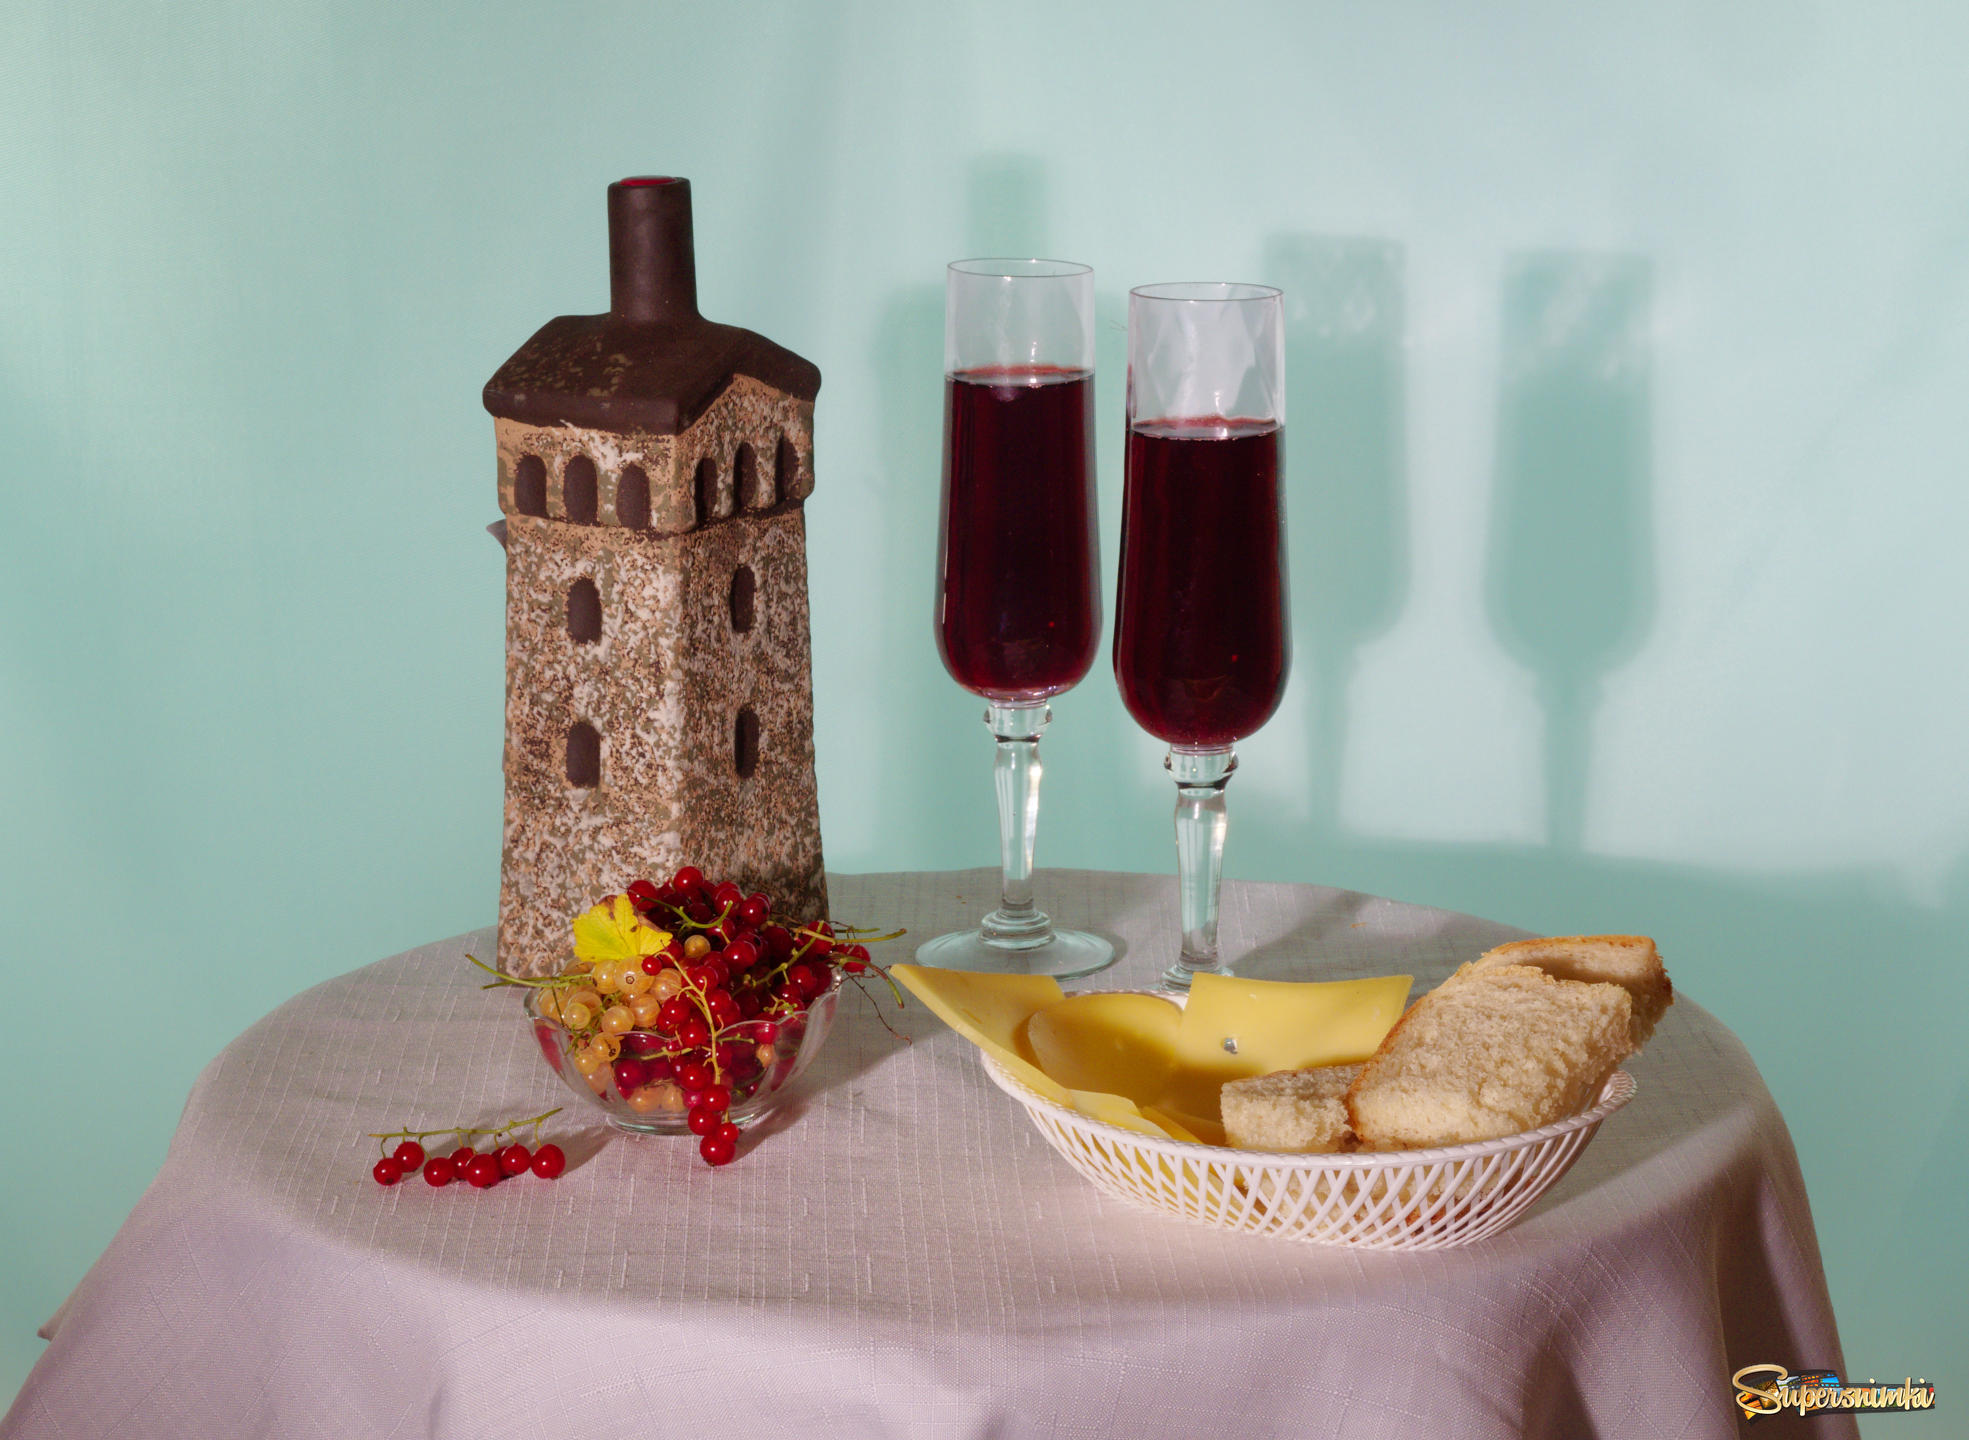 Грузинское вино в глиняной бутылке